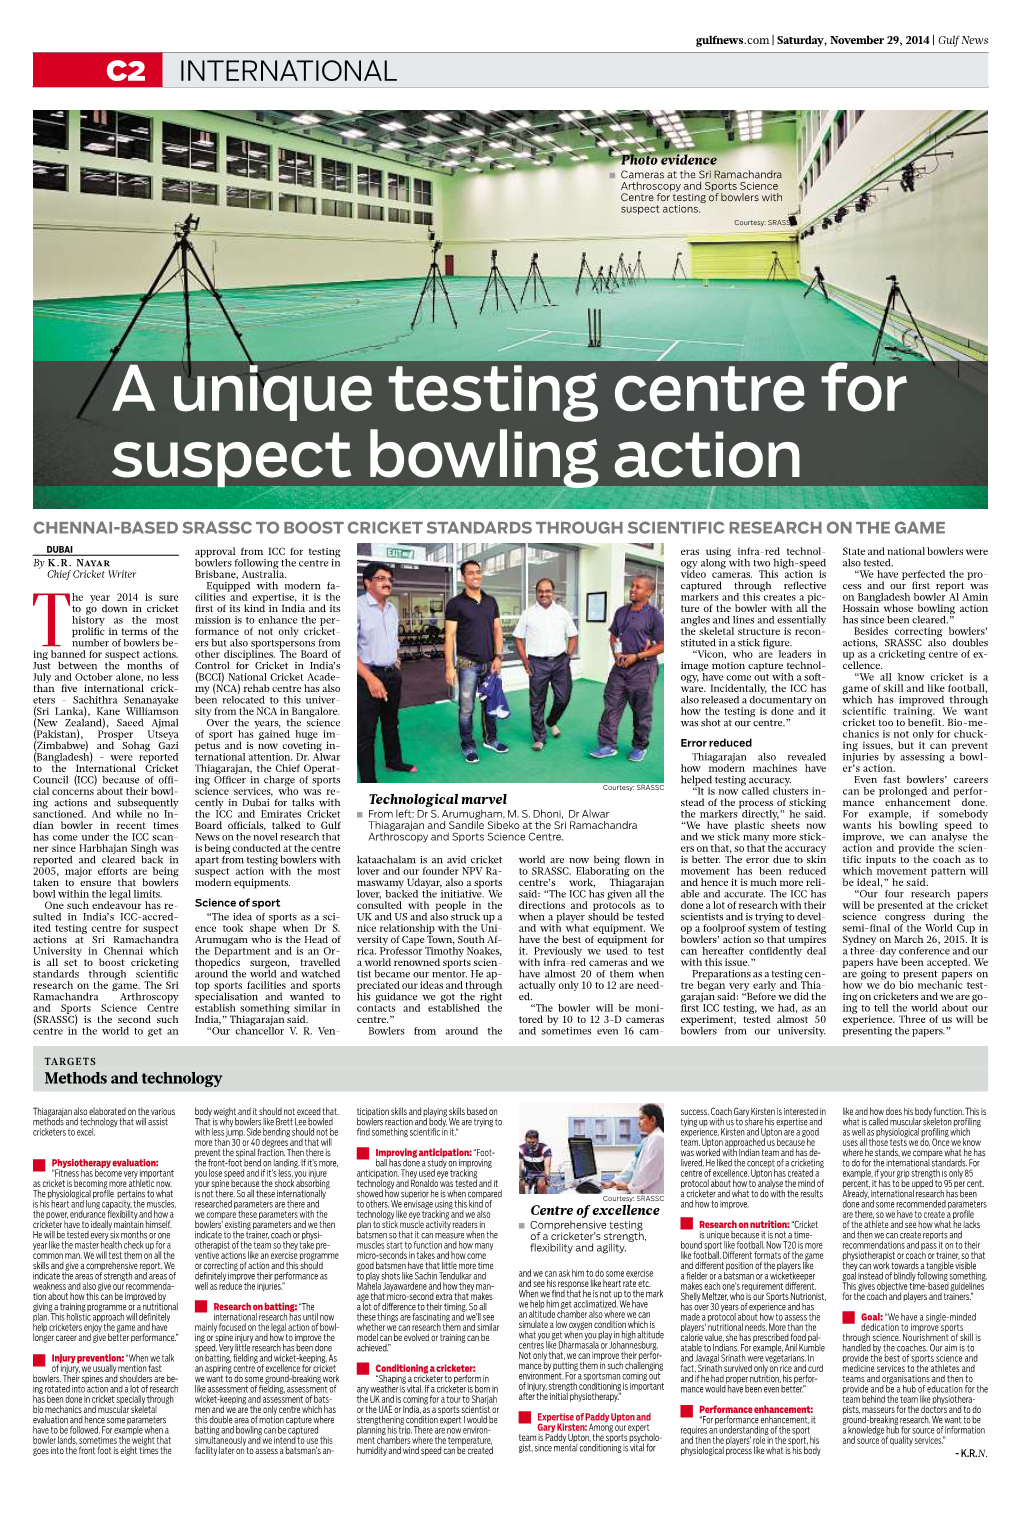 A Unique Testing Centre for Suspect Bowling Action